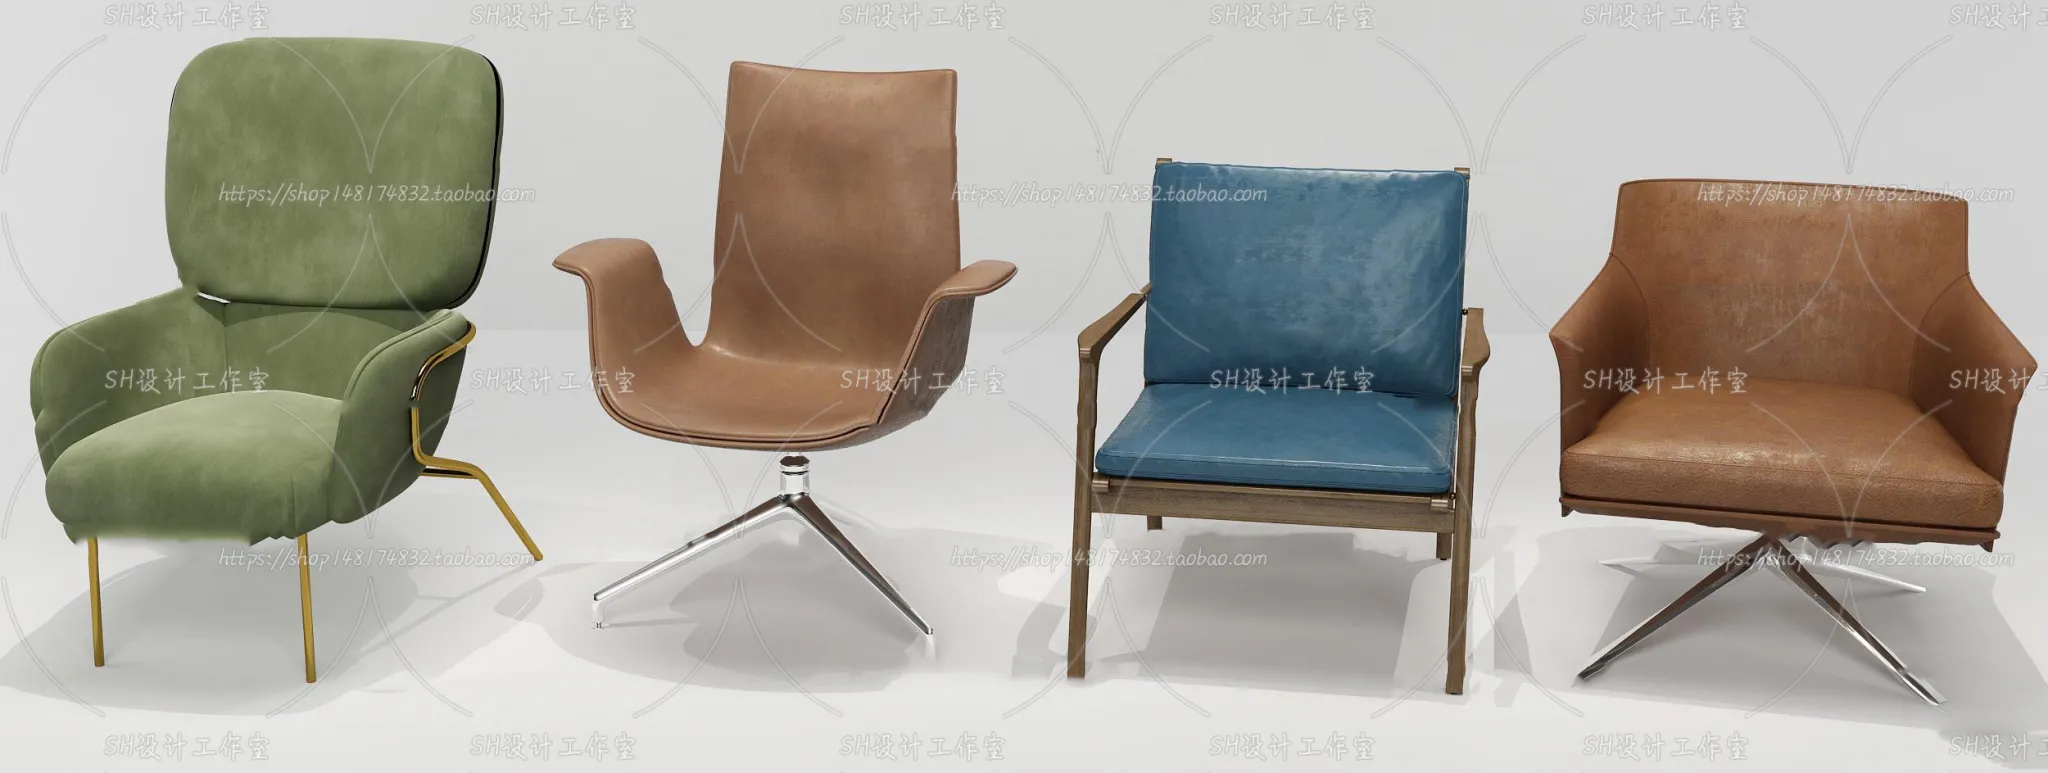 Chair – Single Chair 3D Models – 2012